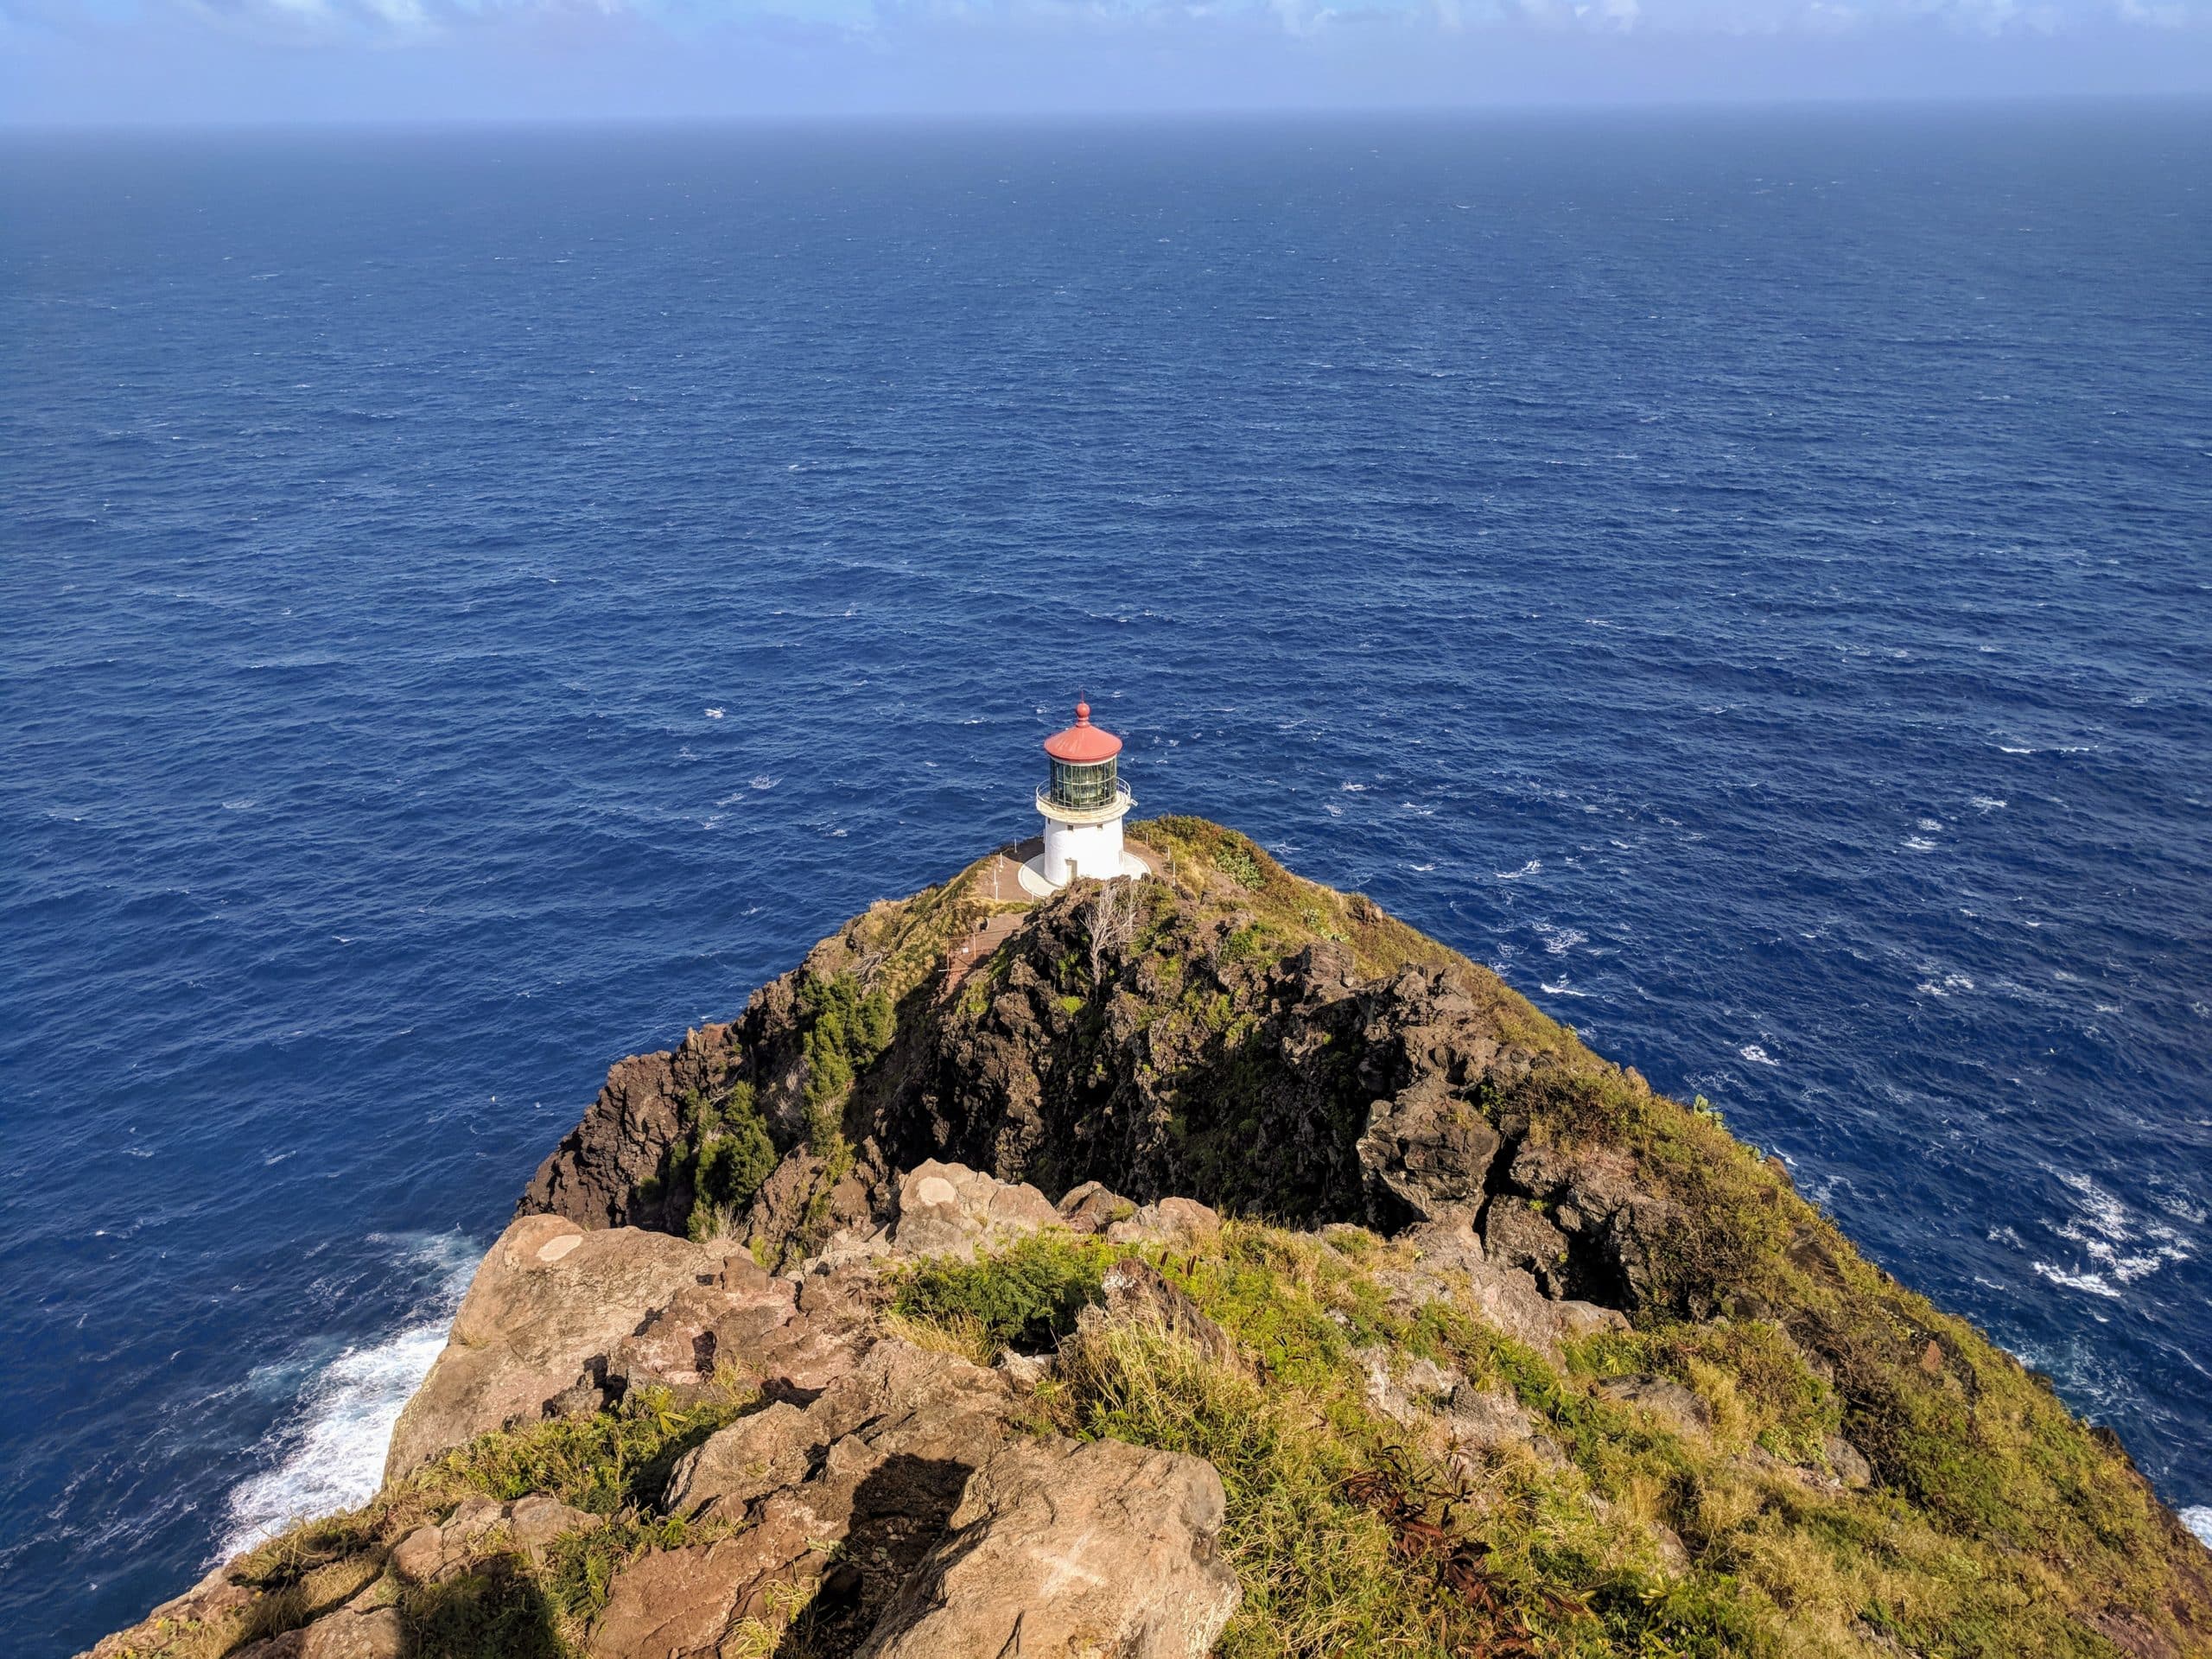 Lighthouse on the Makapuu Lighthouse on Oahu